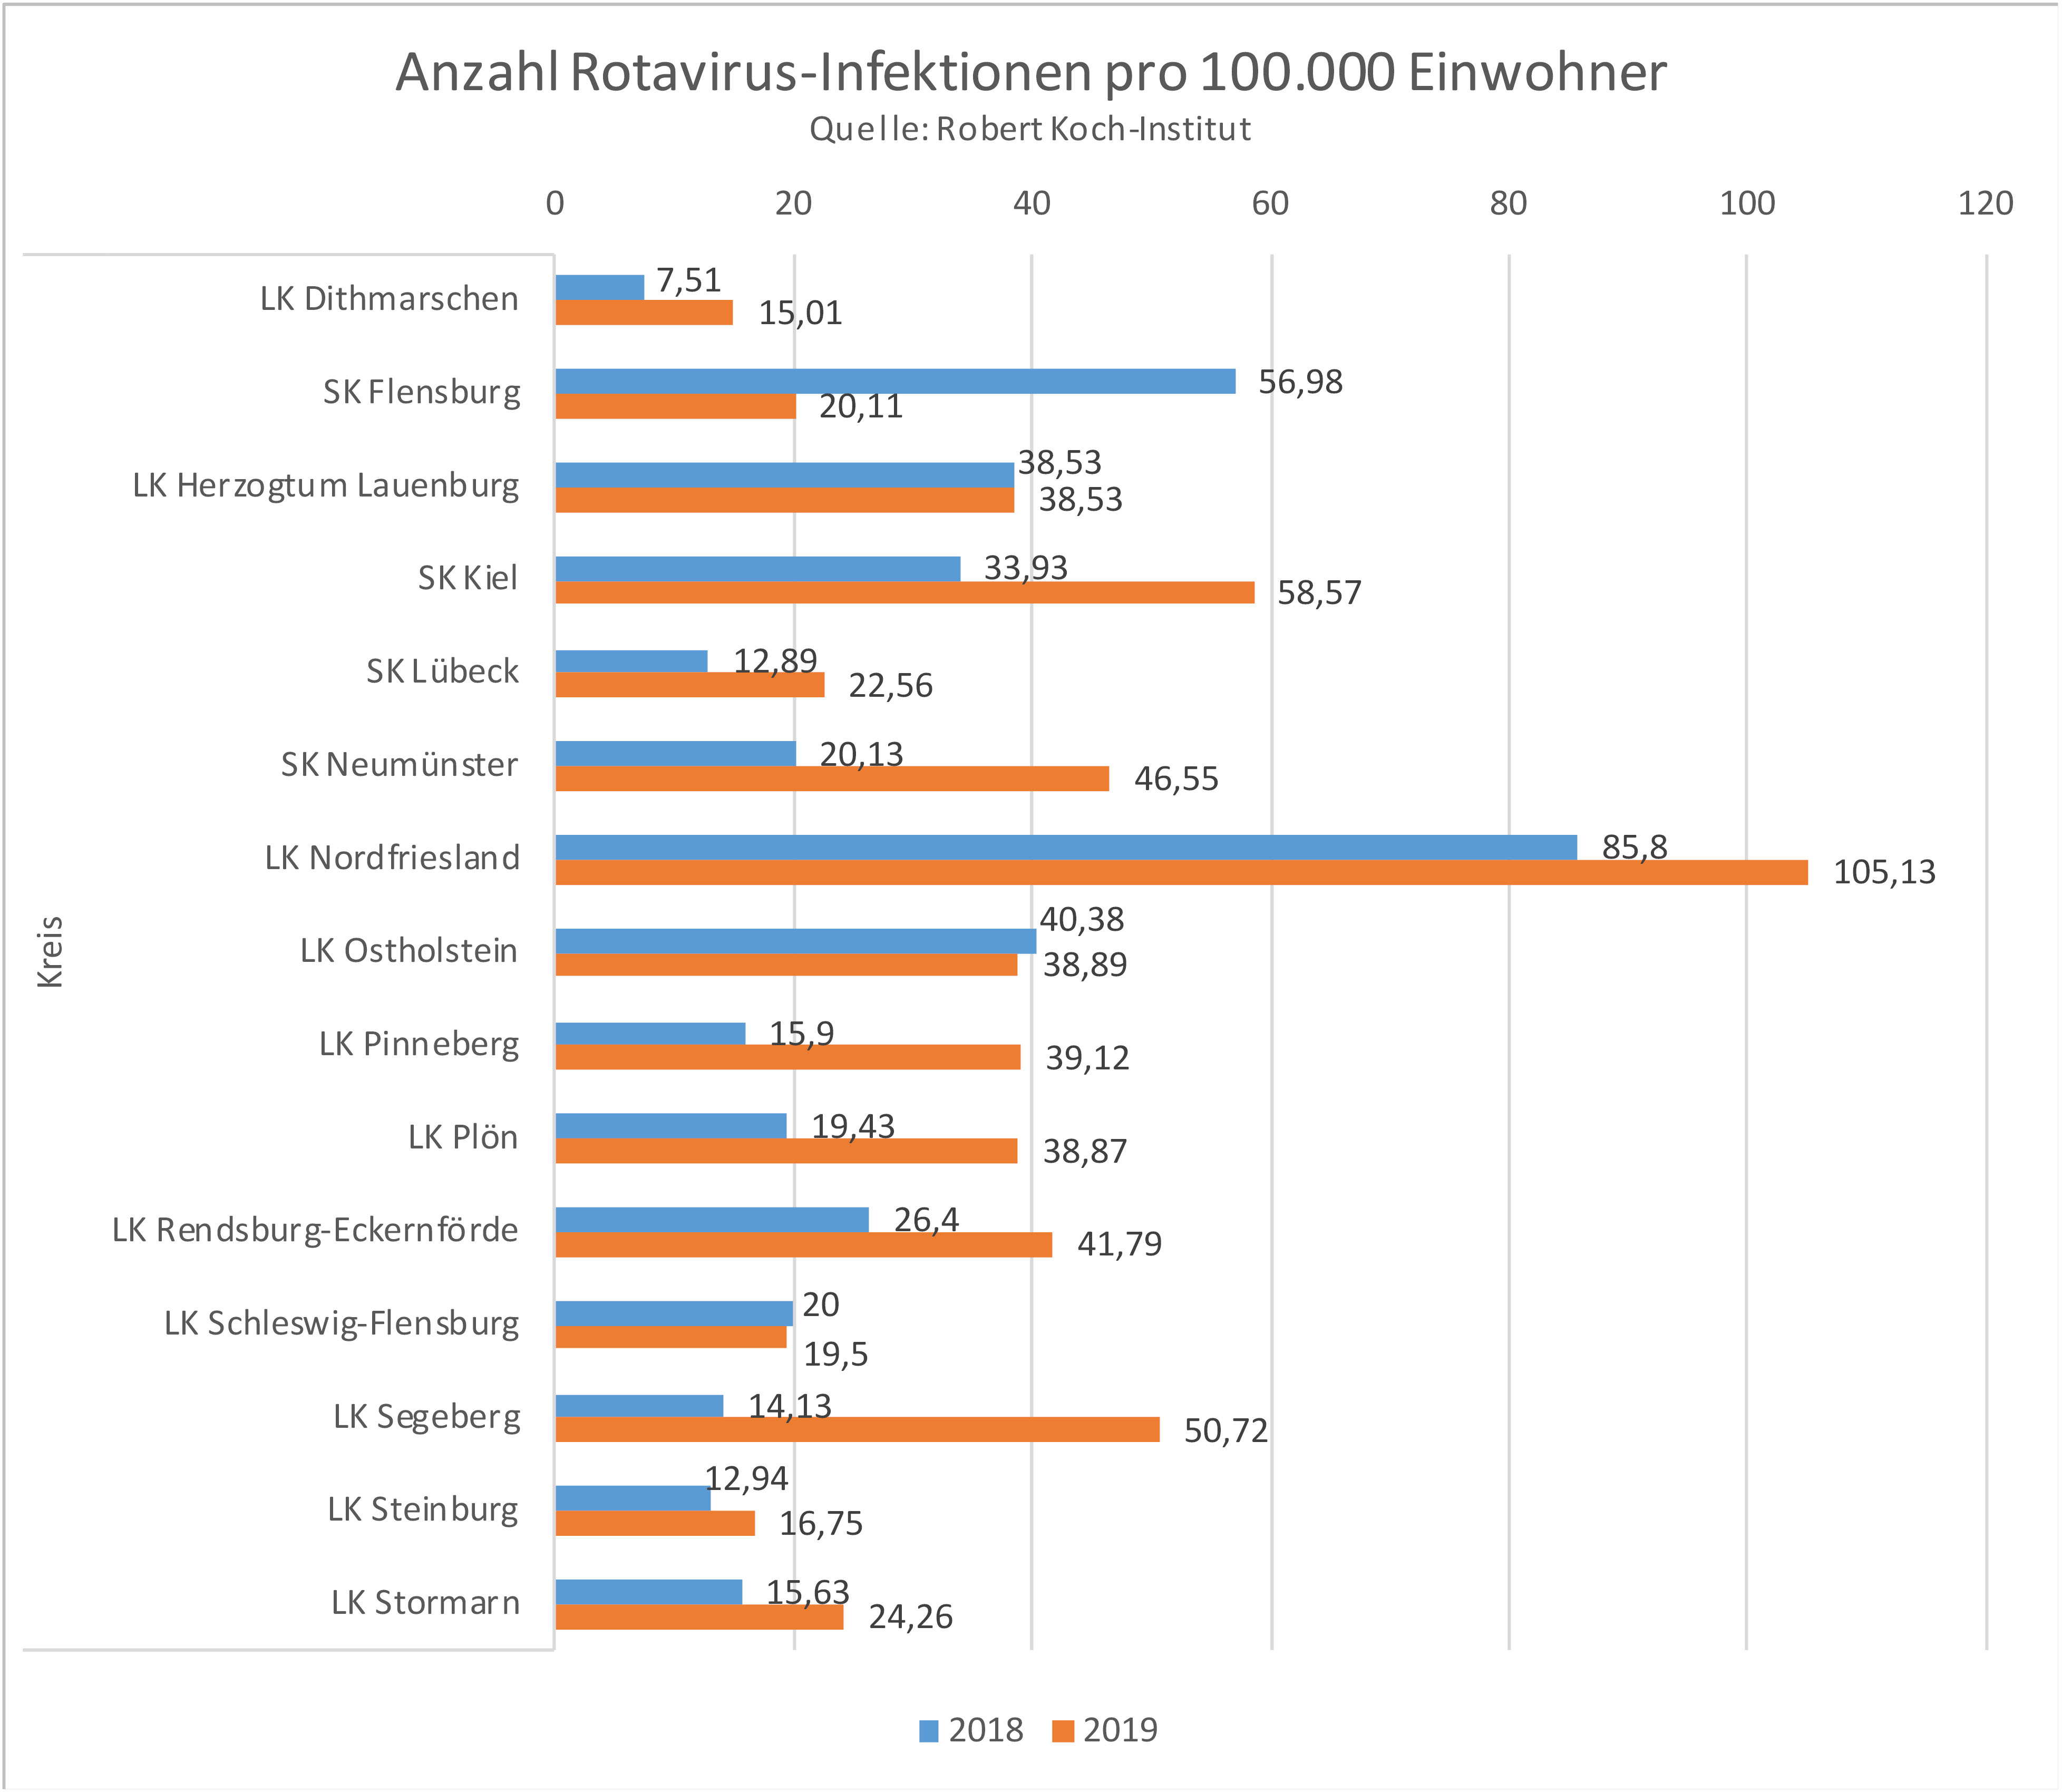 Anzahl der Rotavirus-Infektionen pro 100.000 Einwohner im Vergleich der Jahre 2018 - 2019 nach Landkreisen in Schleswig-Holstein